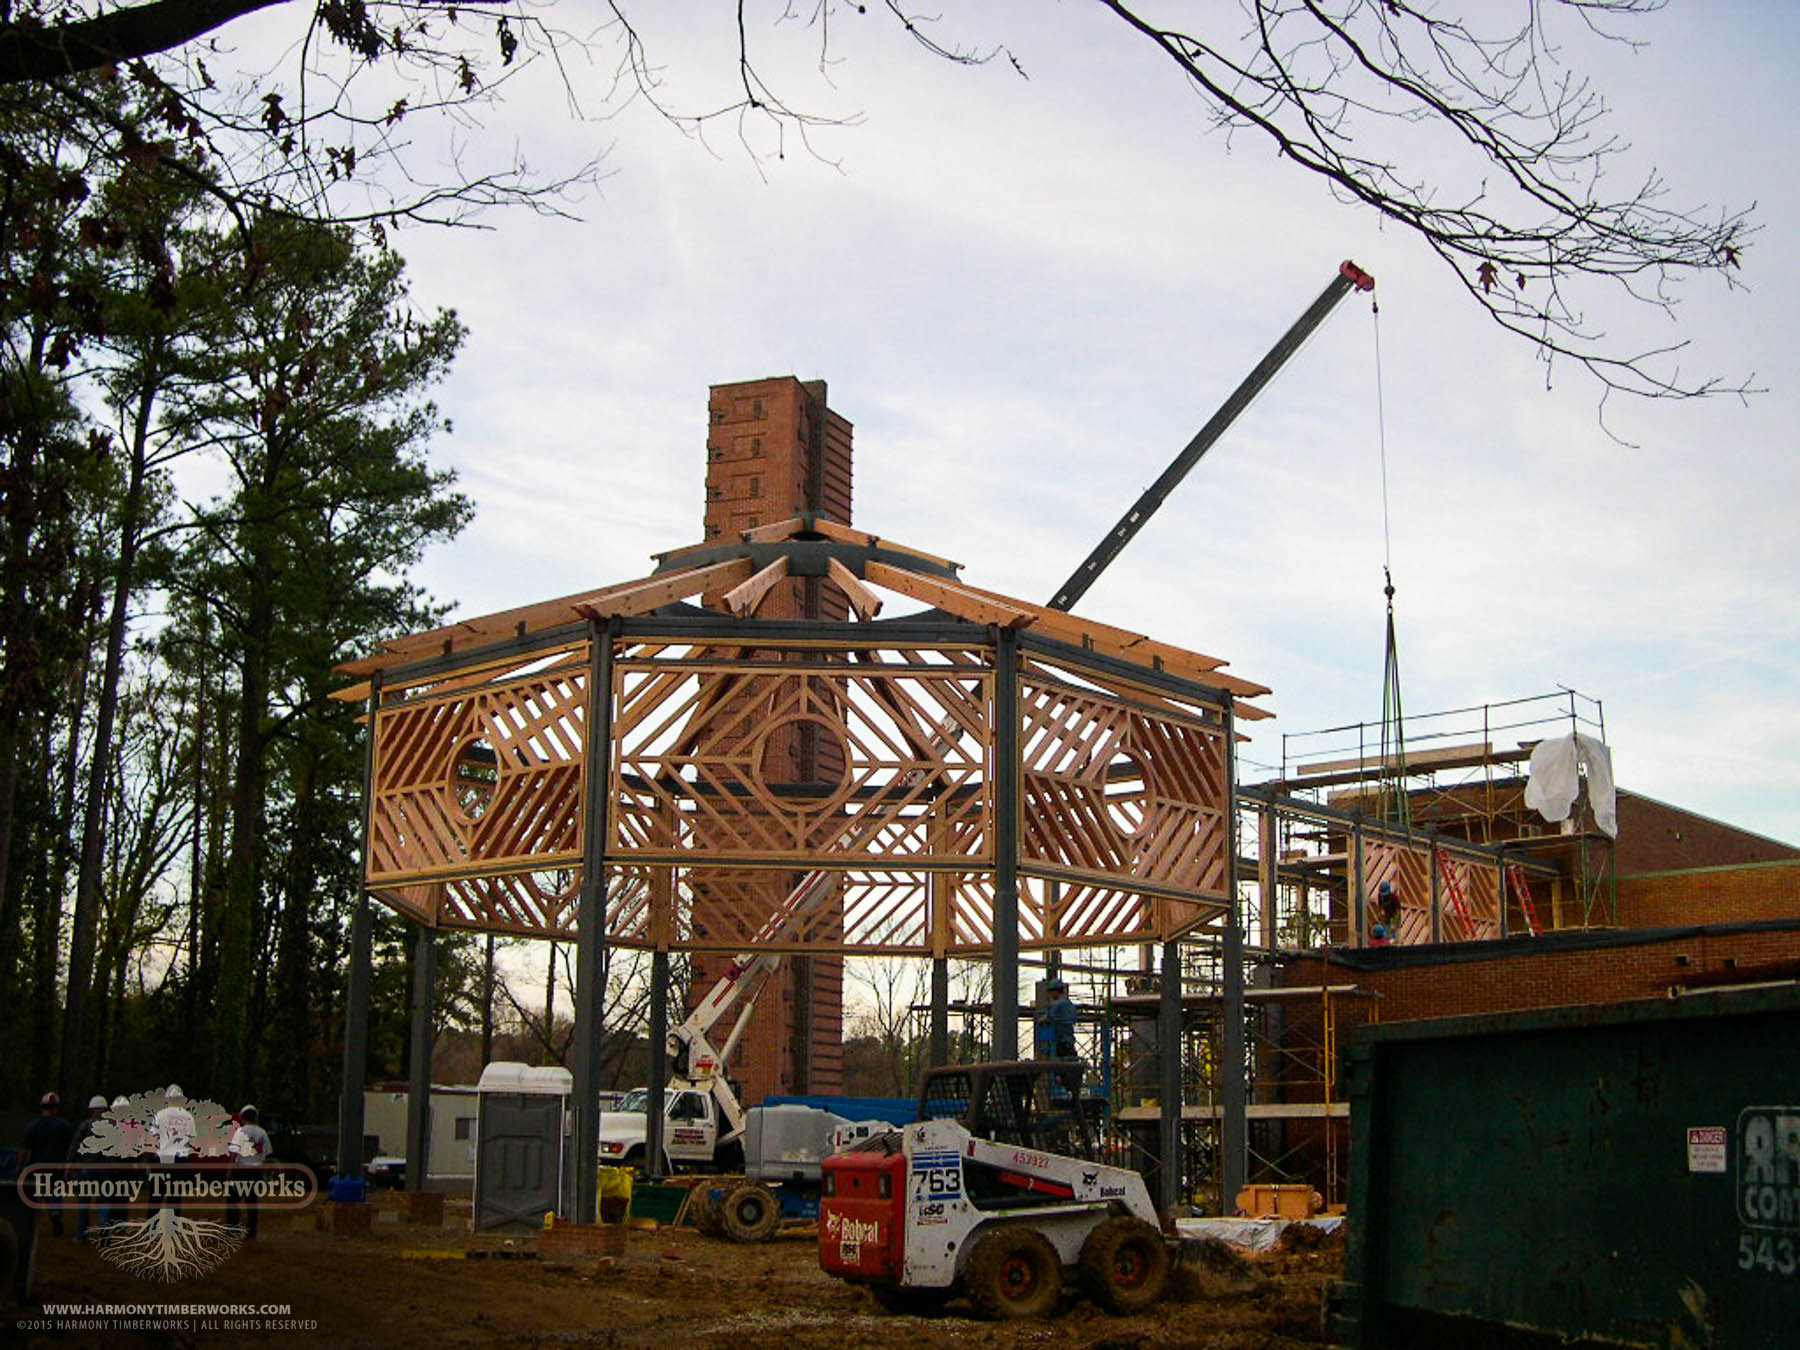 Octagonal Timber Frame Pavilion under construction